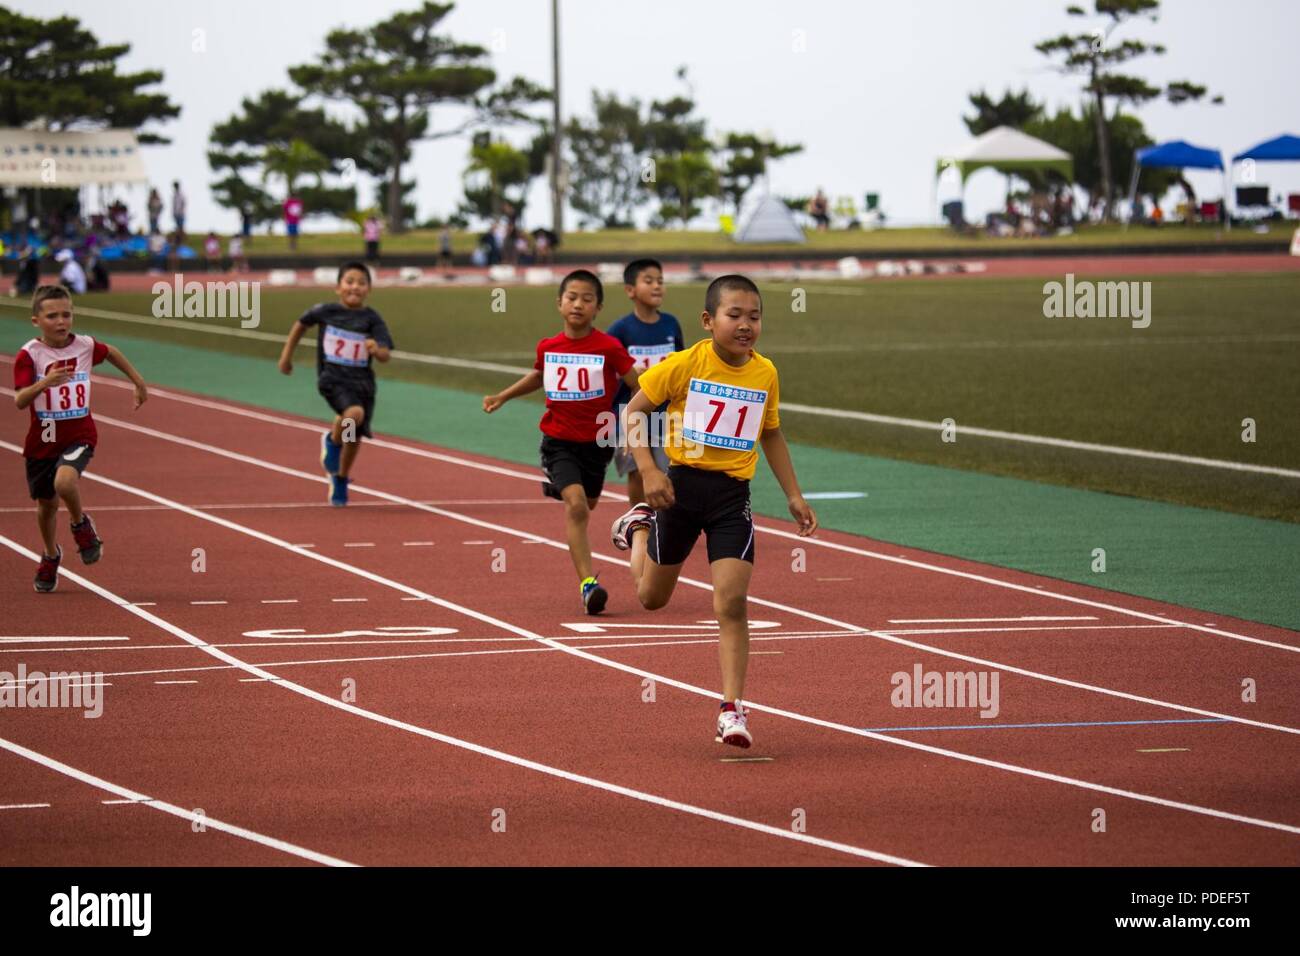 El pueblo de Onna, Okinawa, Japón - Chilren sprint durante la carrera de  los 100 metros lisos en una pista cumplir 19 de mayo en el Complejo  Deportivo de Akama en el